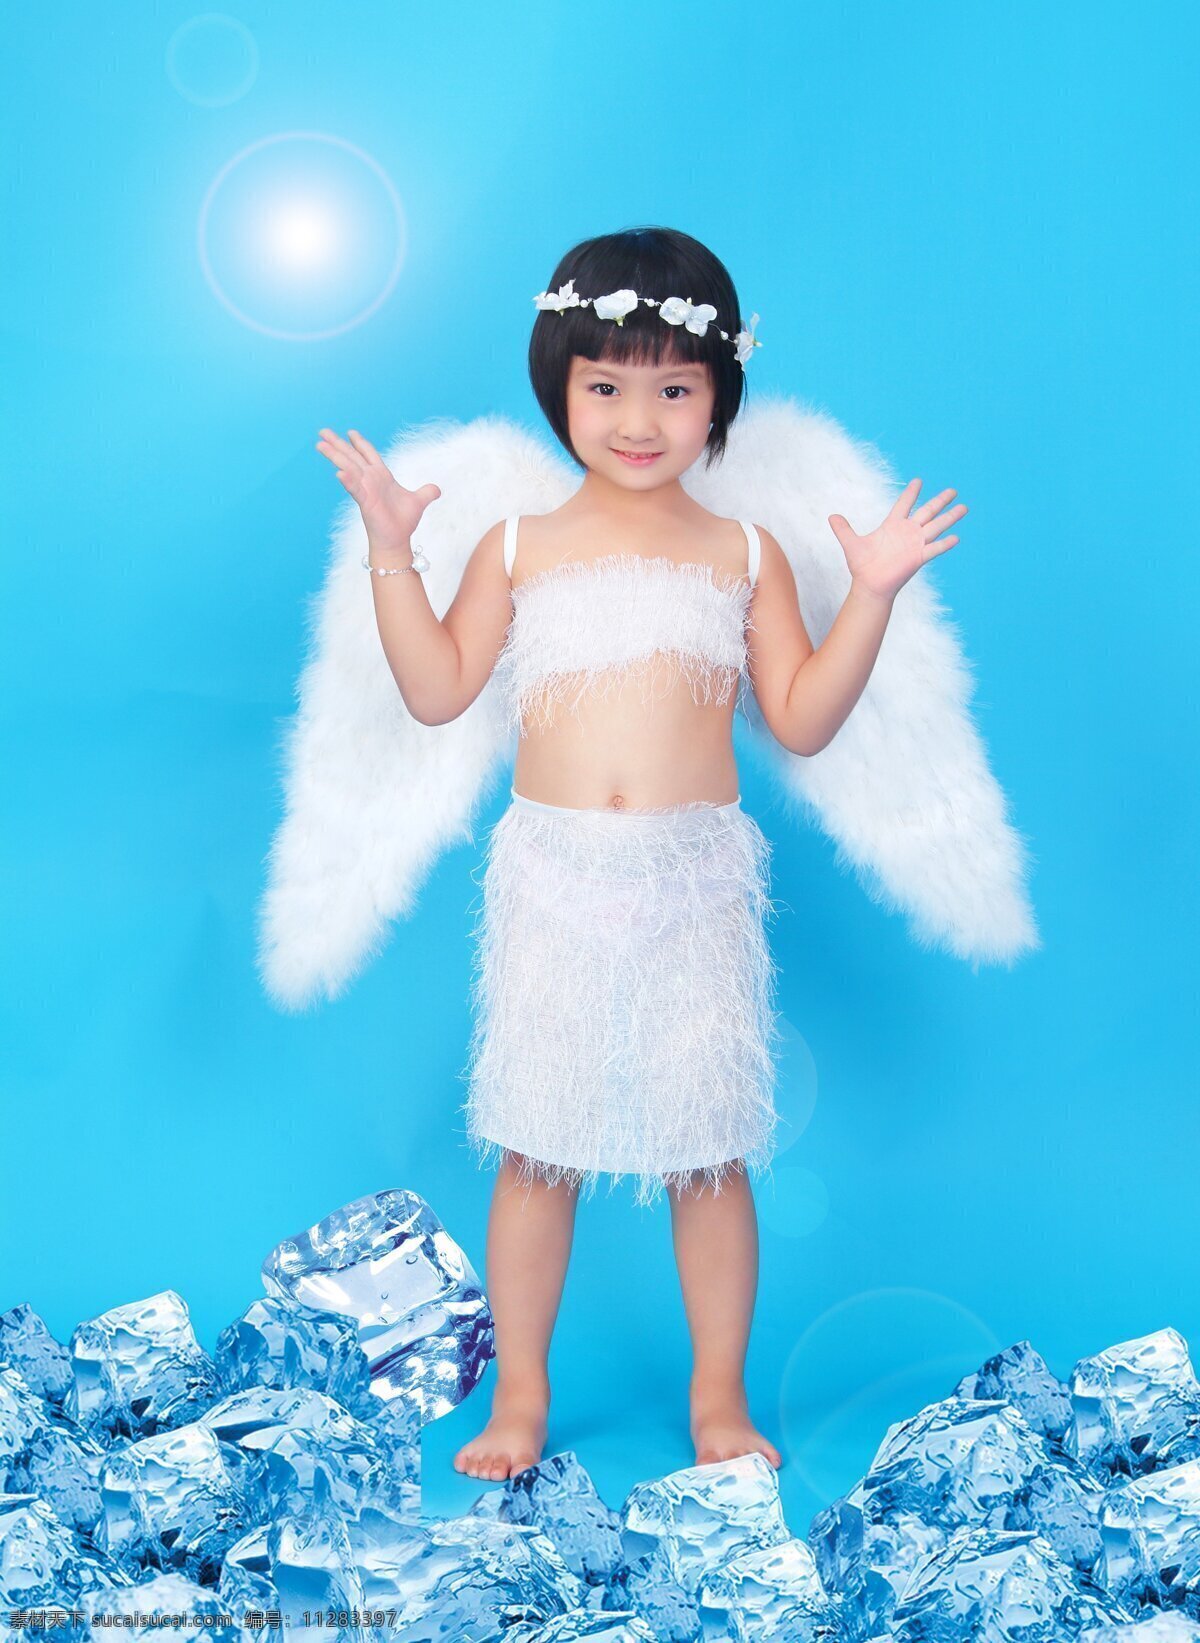 天使 冰块 翅膀 儿童幼儿 可爱 萝莉 人物图库 天使设计素材 天使模板下载 小女孩 psd源文件